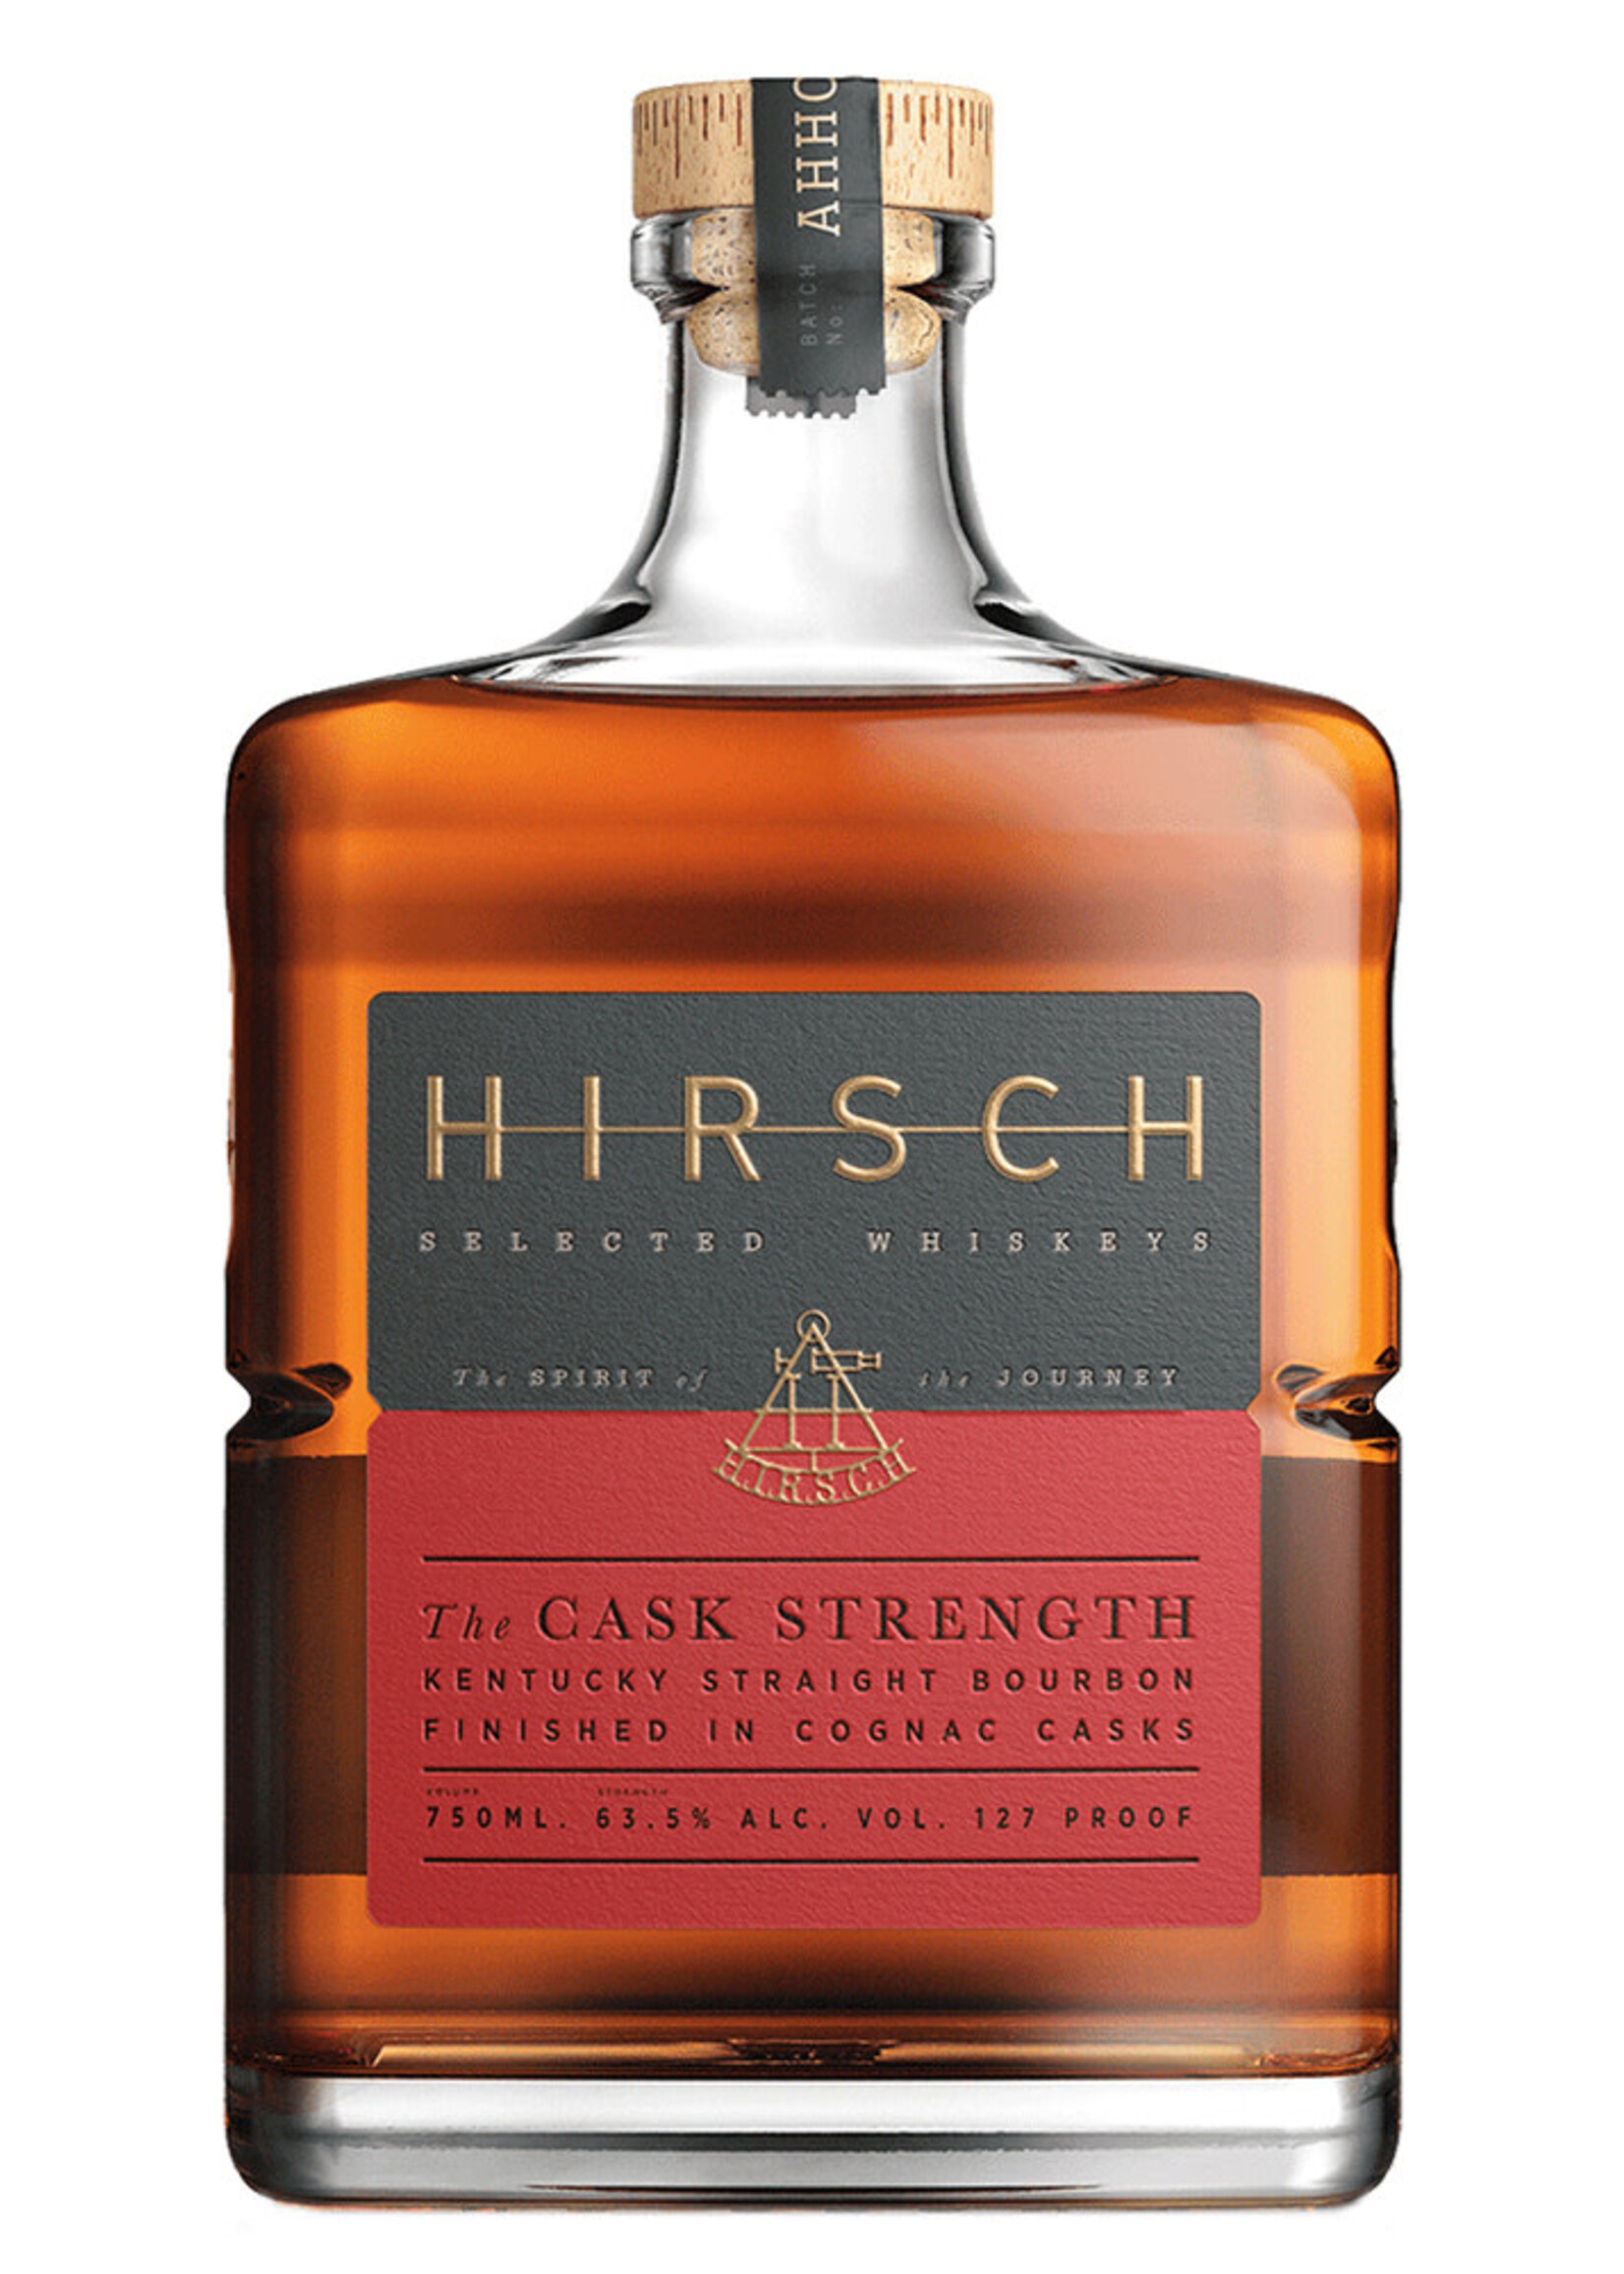 Hirsch Hirsch "The Cask Strength" Cognac Cask Finish 750ML